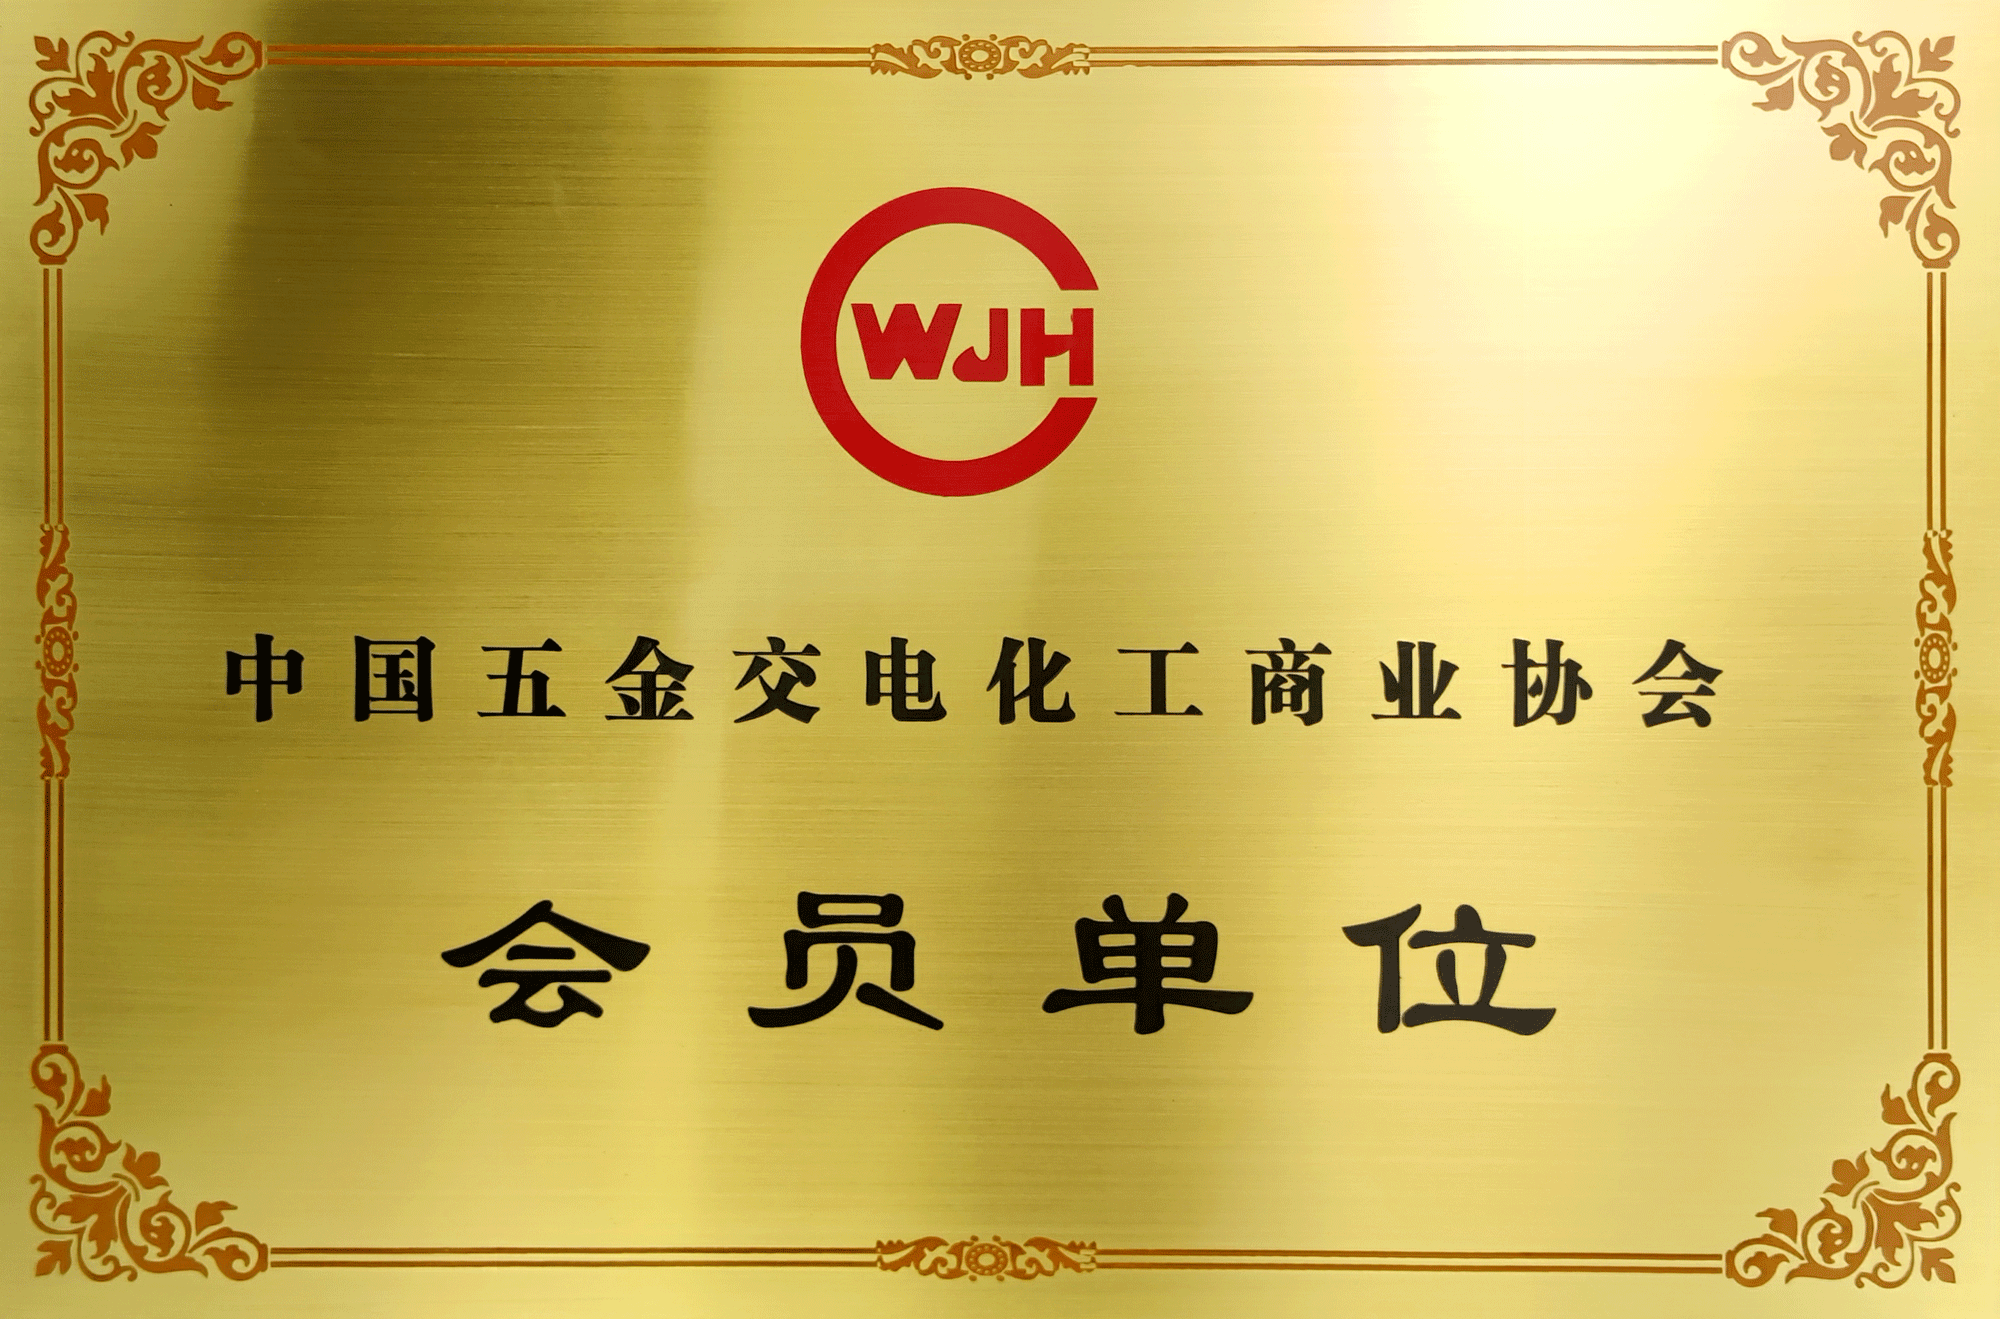 中国五金交电化工商业协会会员单位